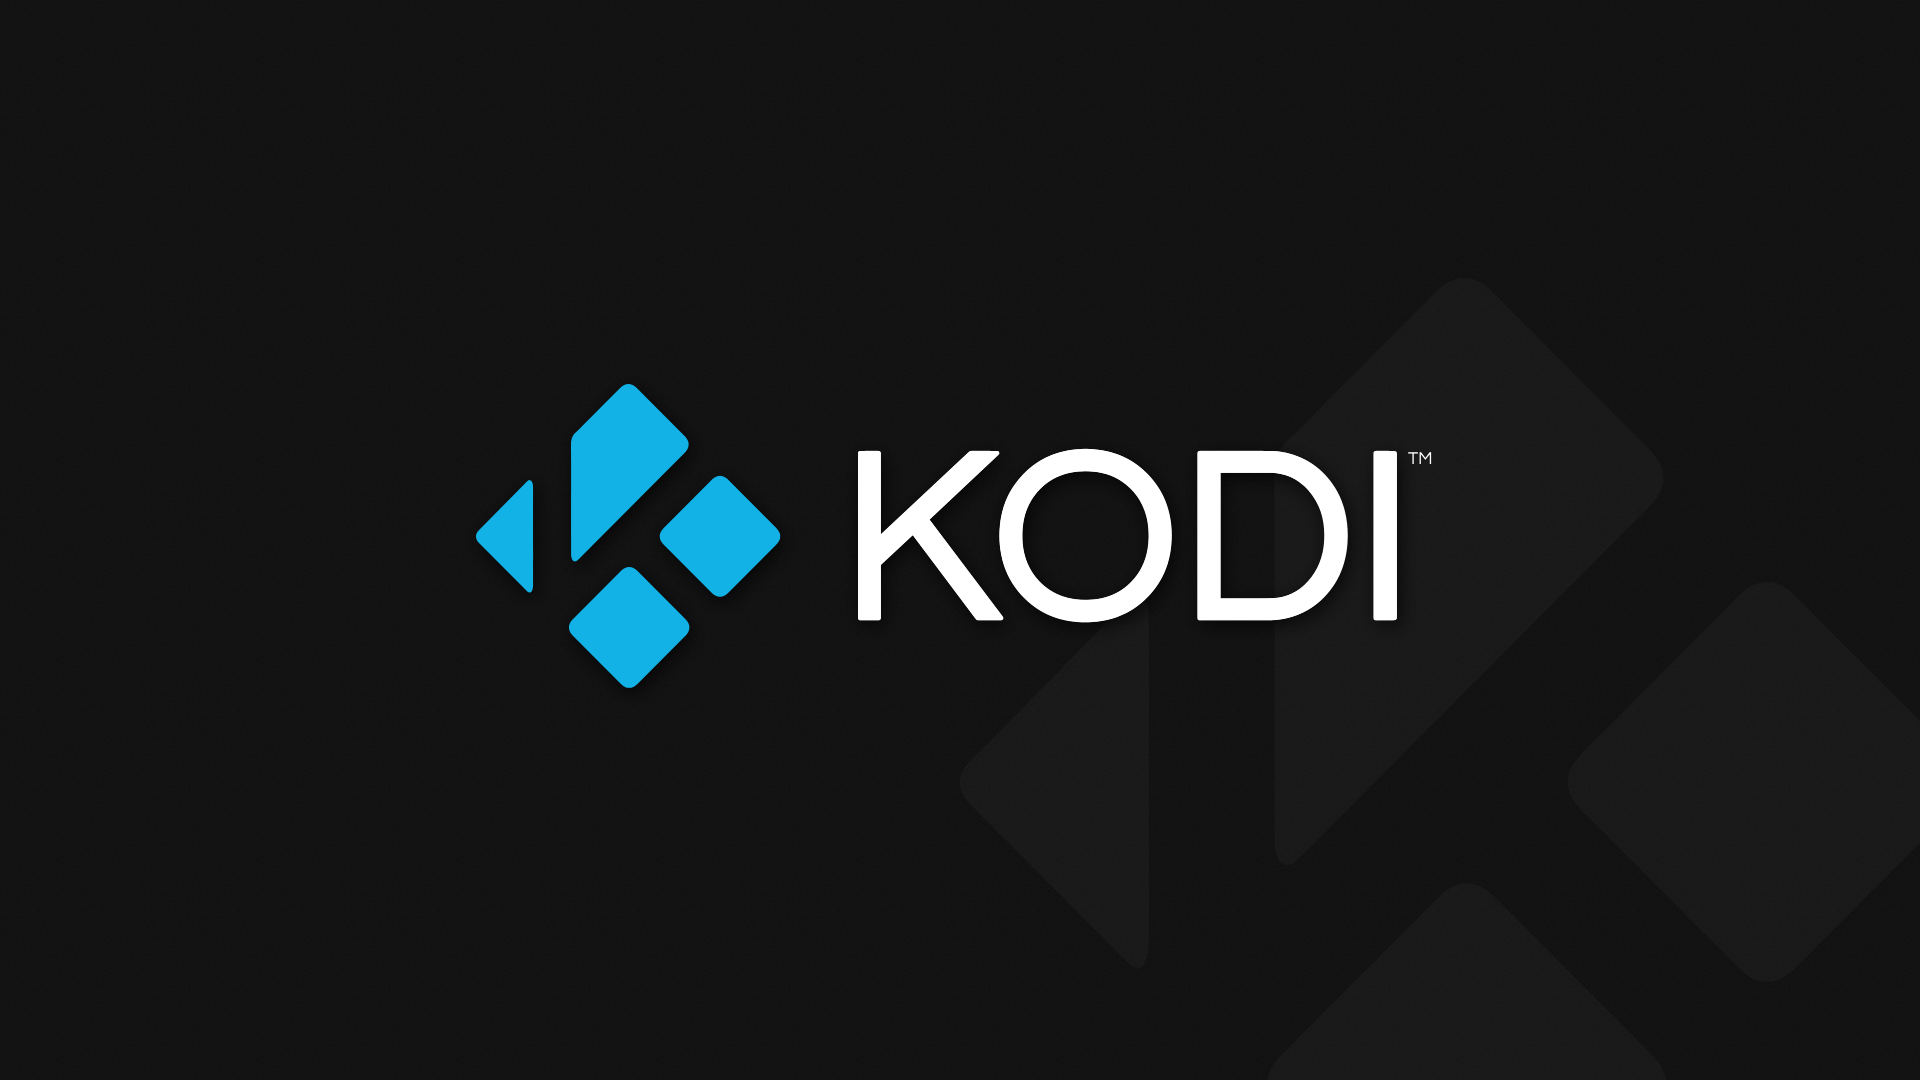 Kodi VPN: Best VPNs for Kodi in 2019